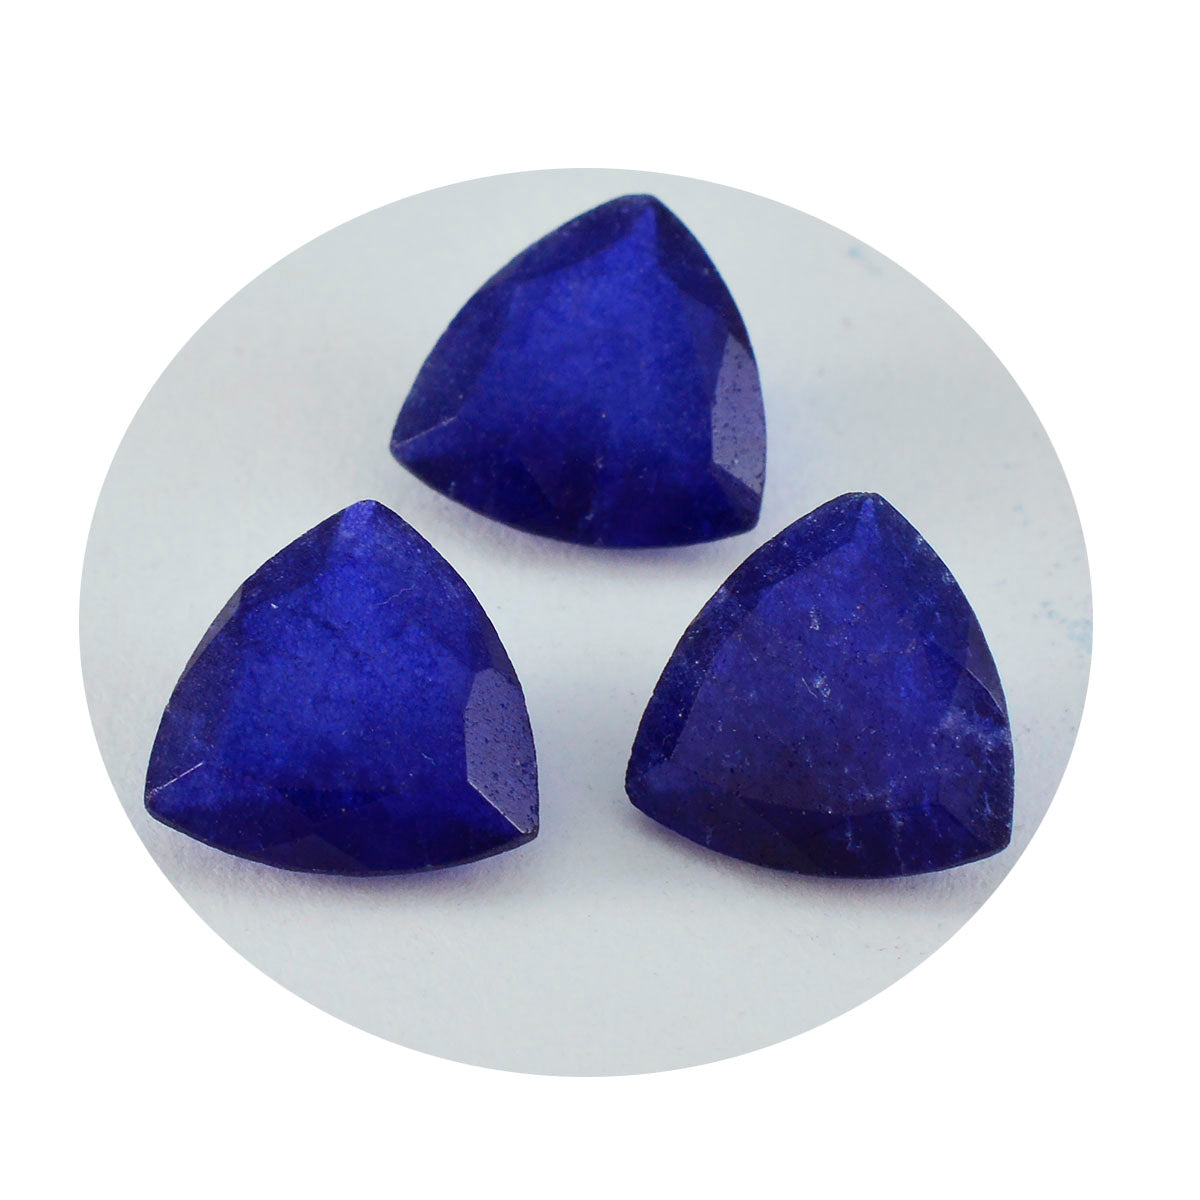 riyogems 1 шт. натуральная синяя яшма ограненная 12x12 мм форма триллиона камень потрясающего качества